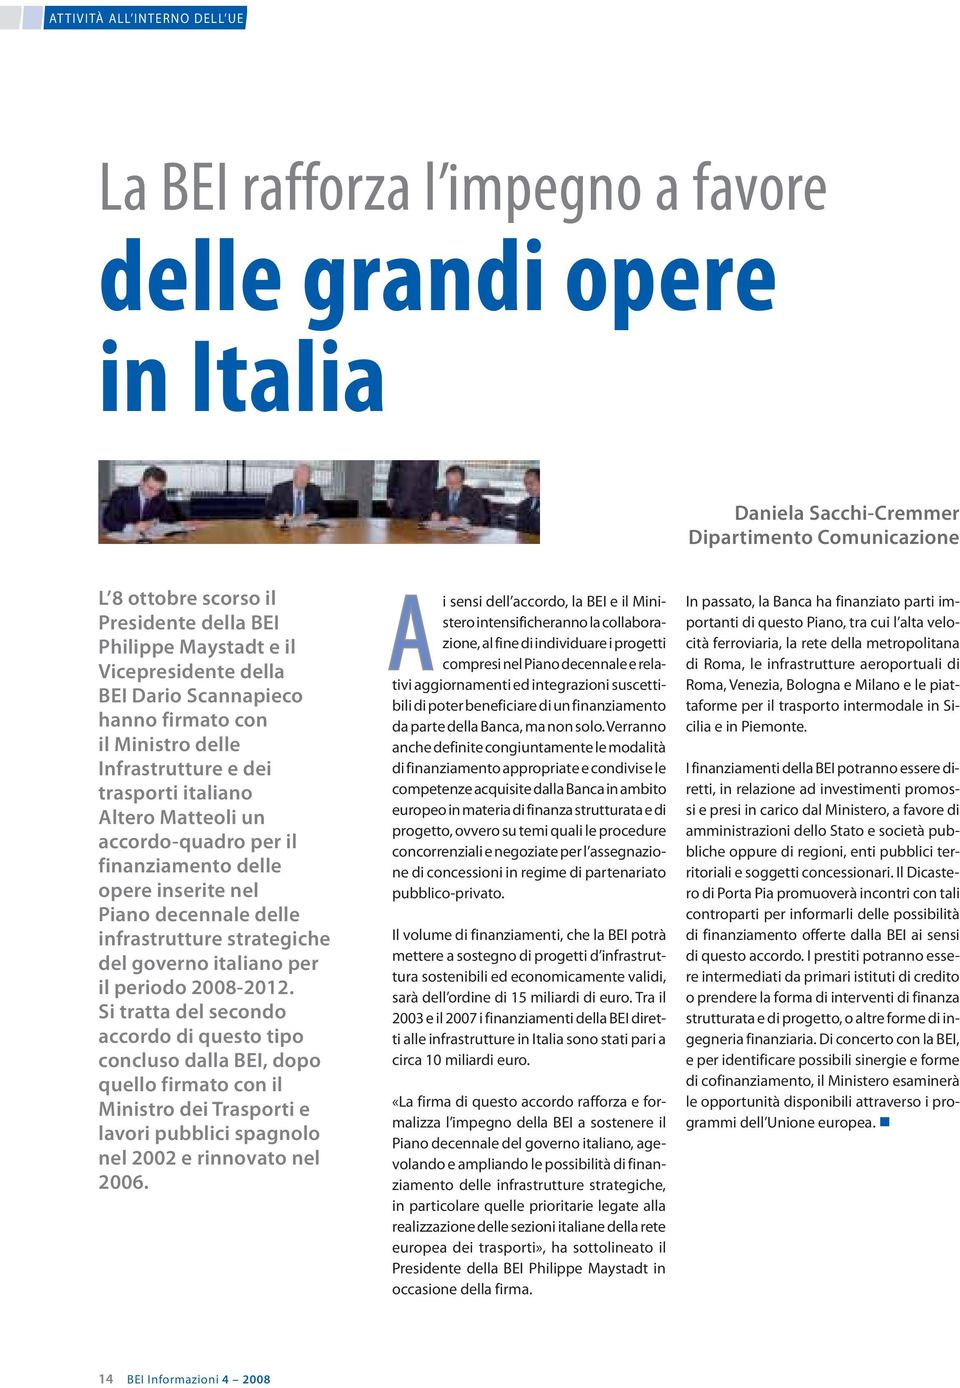 inserite nel Piano decennale delle infrastrutture strategiche del governo italiano per il periodo 2008-2012.